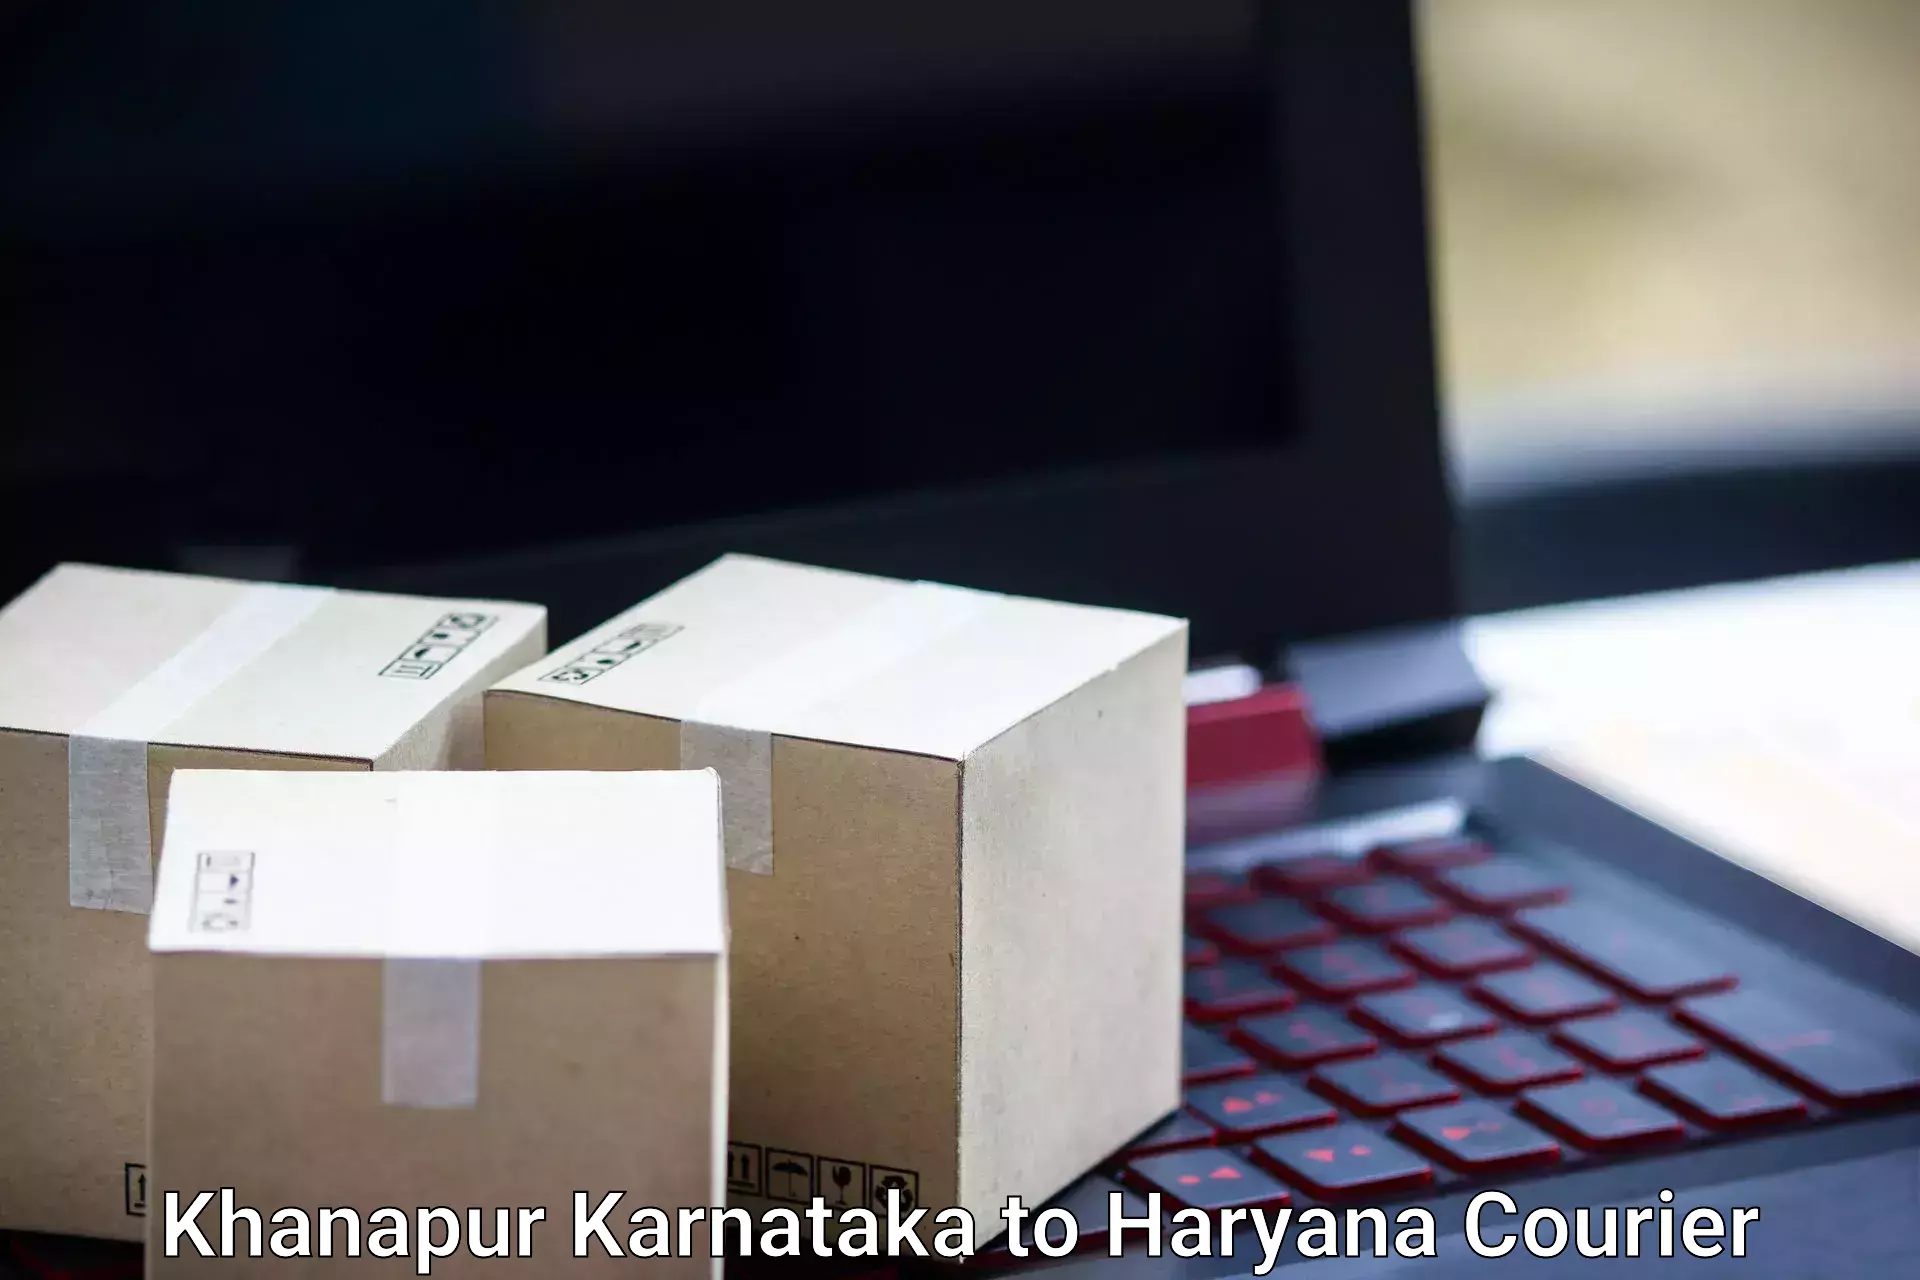 Baggage shipping optimization Khanapur Karnataka to Chaudhary Charan Singh Haryana Agricultural University Hisar